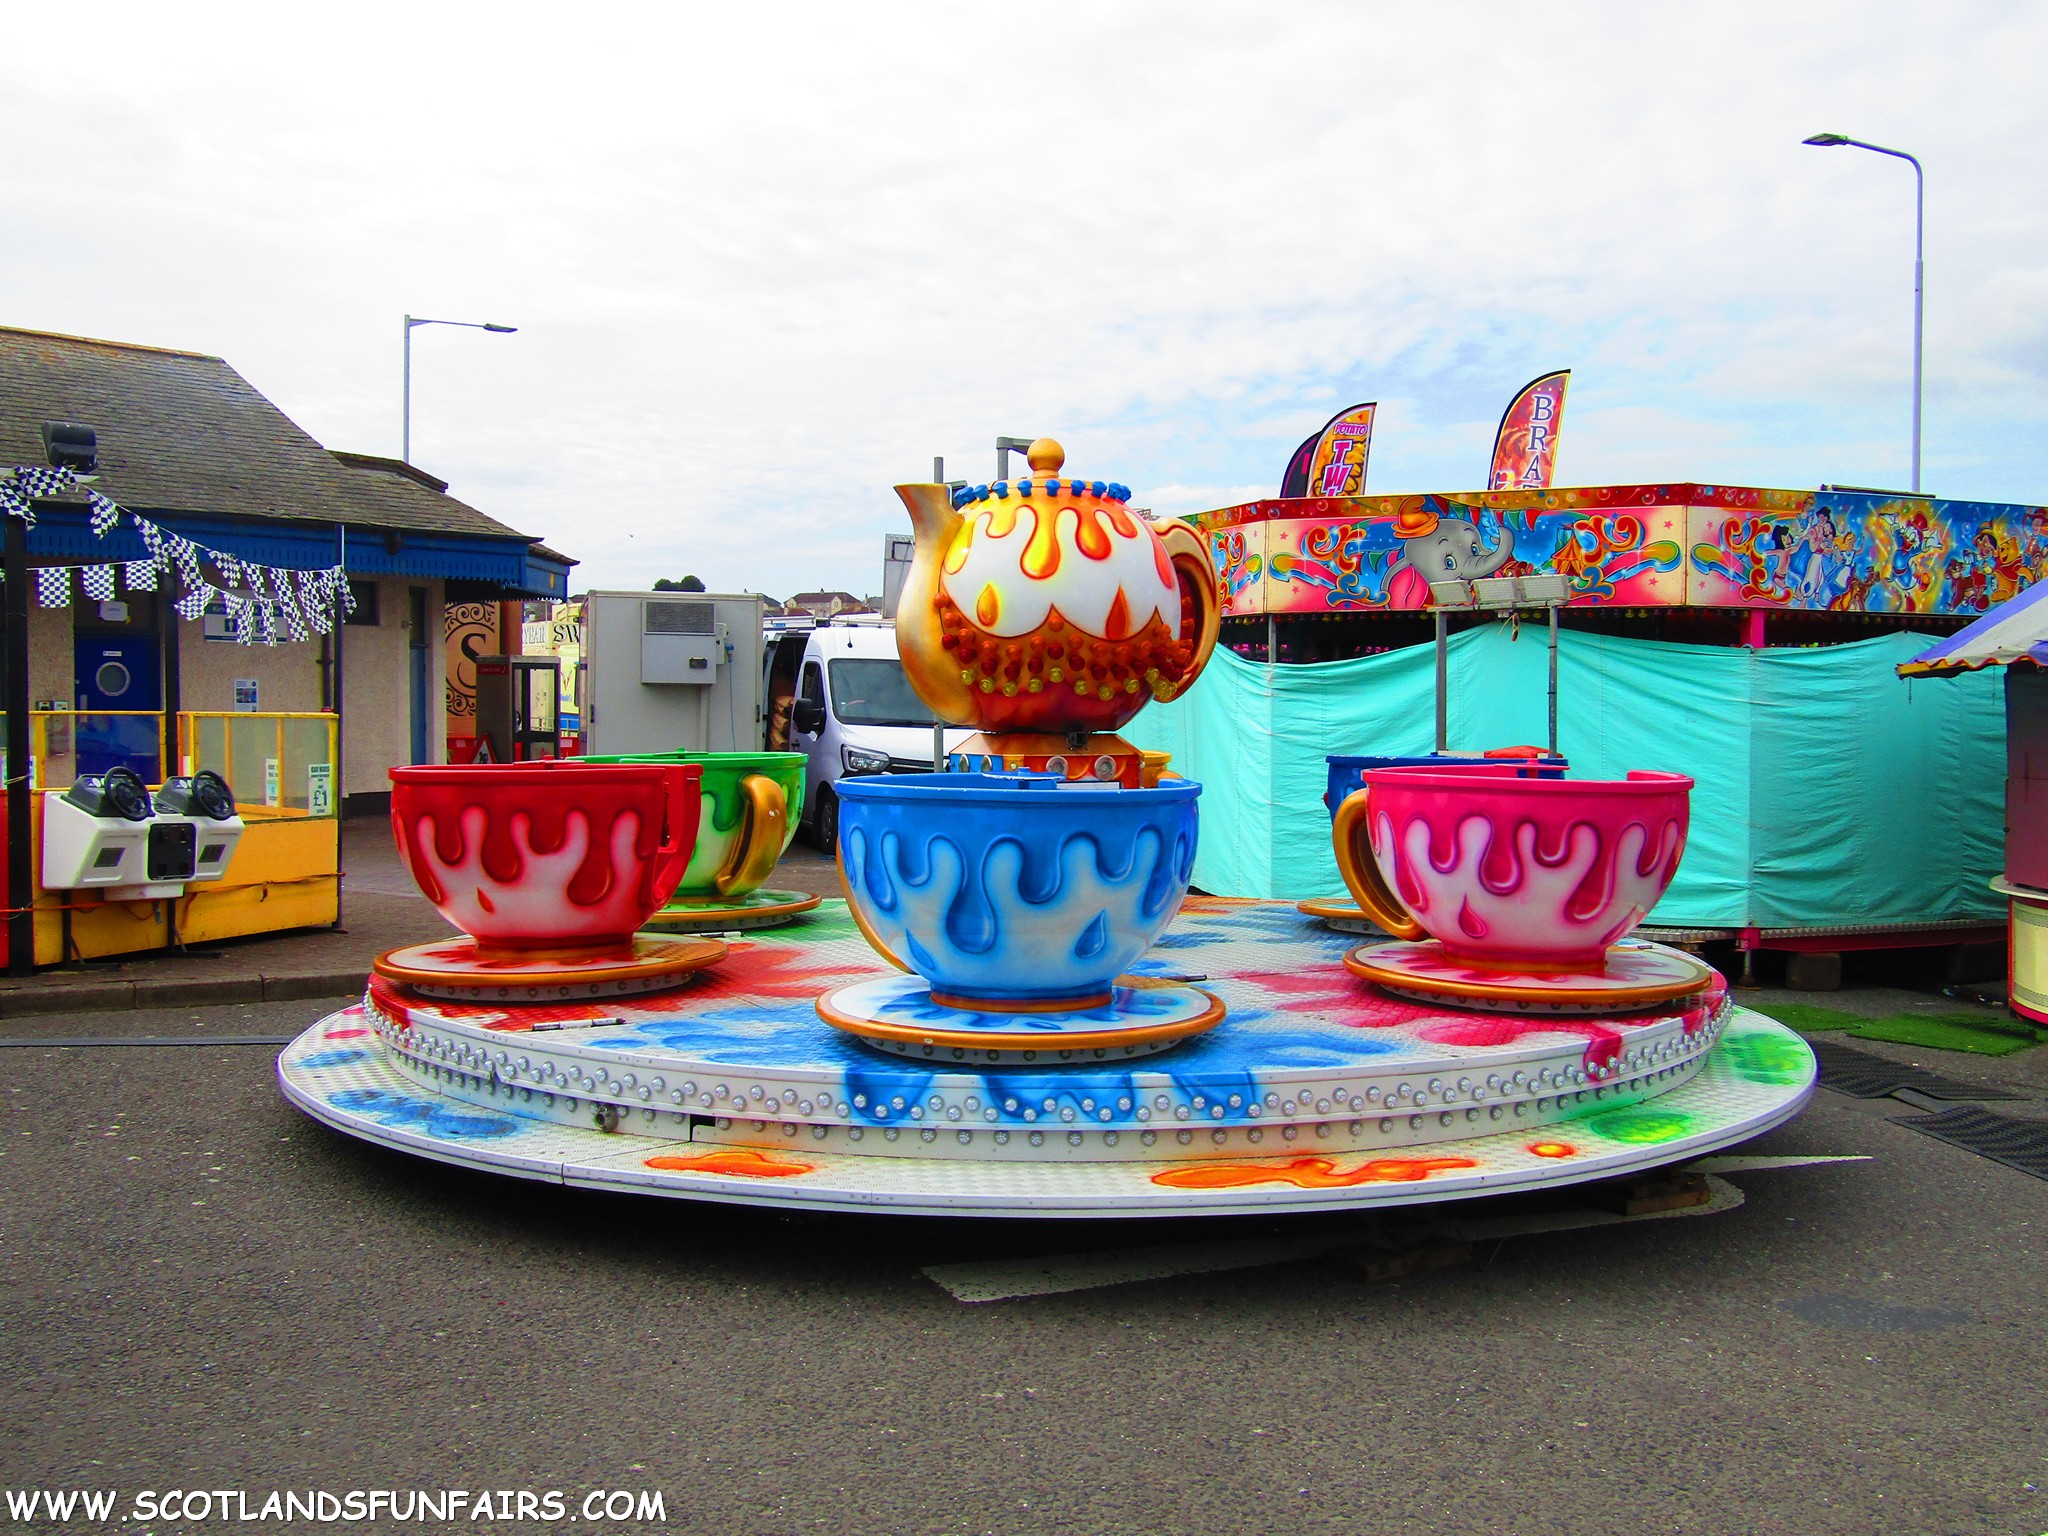 Phillip Paris's Teacups